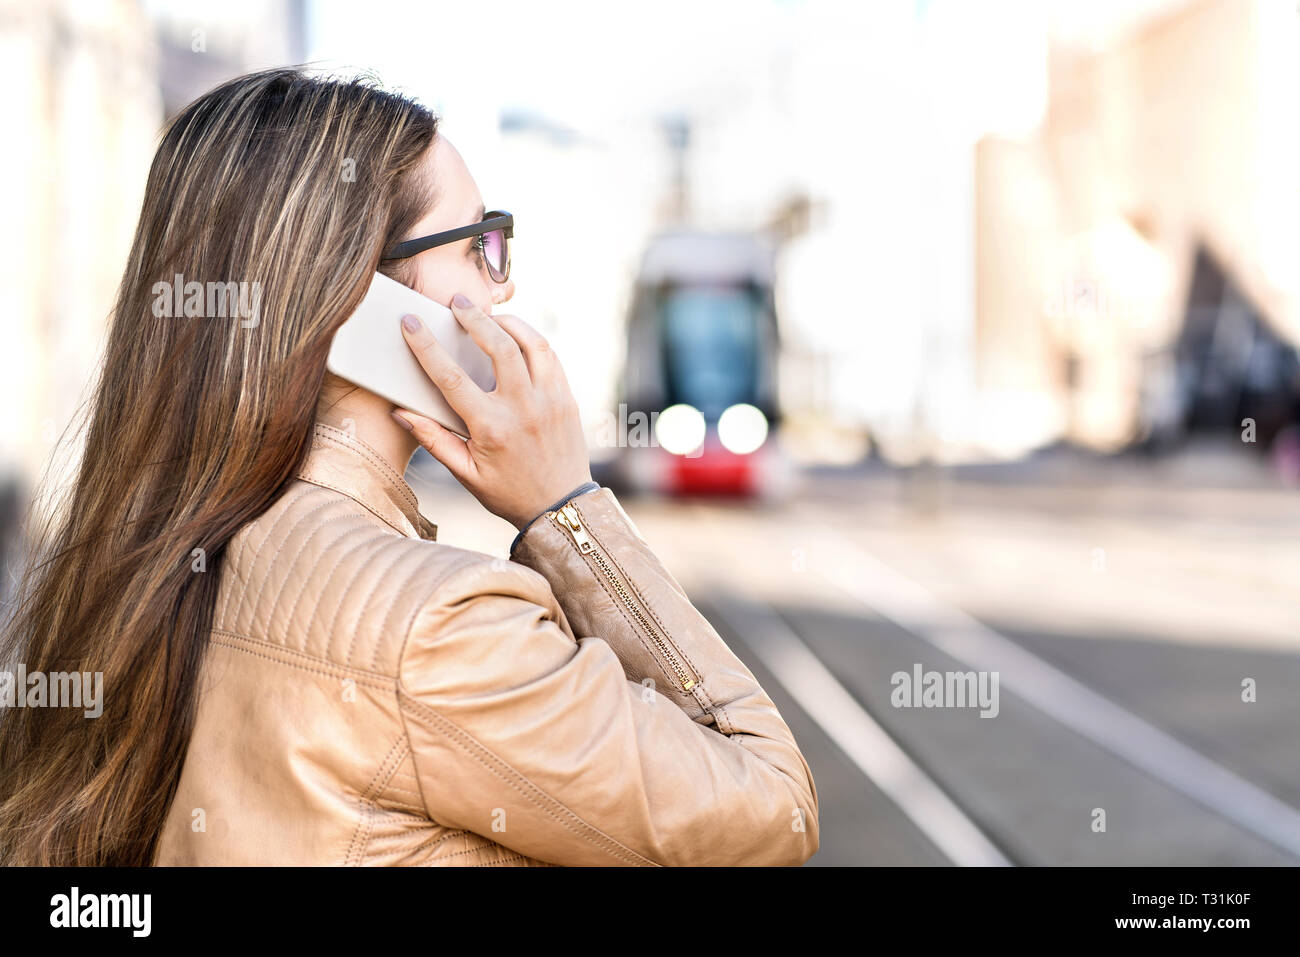 Busy Geschäftsfrau mit einem Telefonanruf während für Straßenbahn warten. Junge Frau mit Smartphone in der Straße der Stadt. Elektrische Zug im Hintergrund. Stockfoto